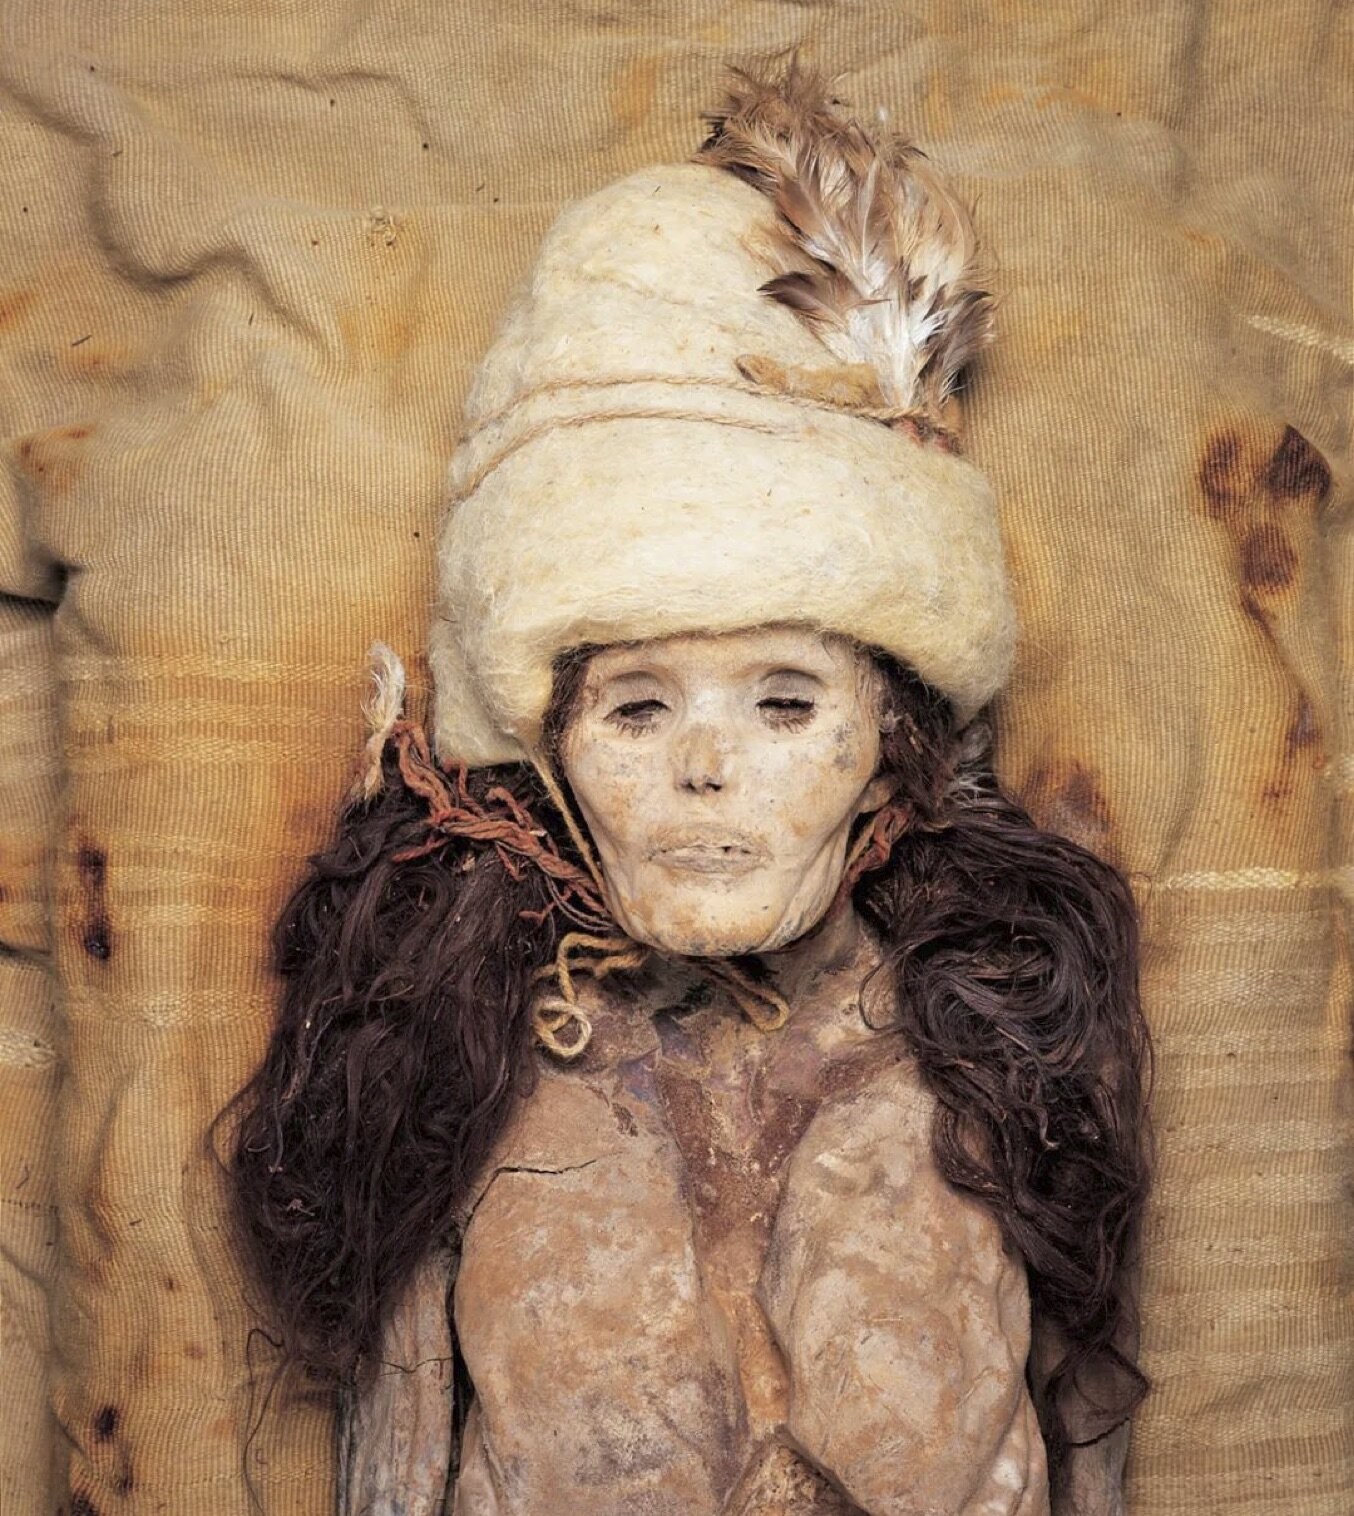 Mulher mumificada no cemitério de Xiaohe, na China  (Foto:  Instituto de Relíquias Culturais e Arqueologia de Xinjiang/Wenying Li)